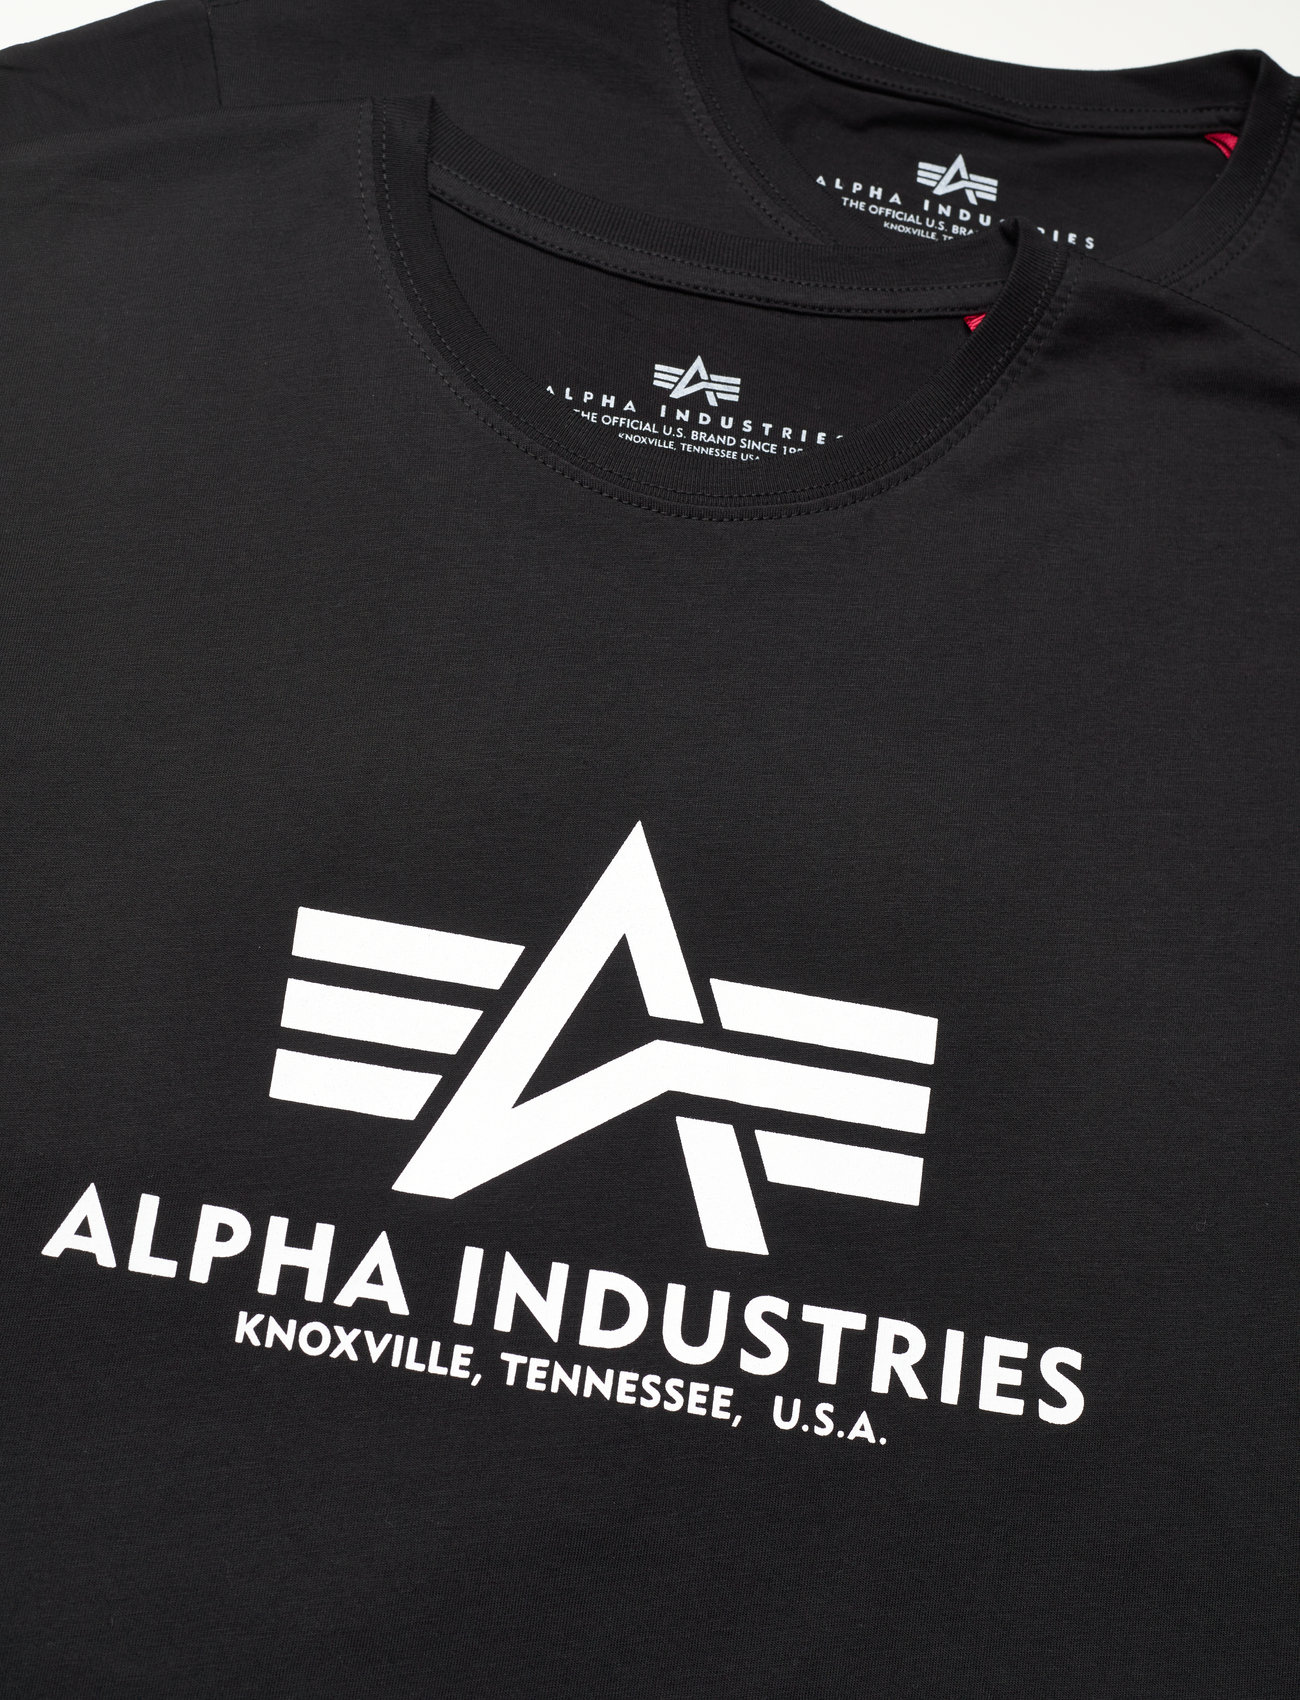 Alpha Industries - Basic T 2 Pack - kortermede t-skjorter - black - 1